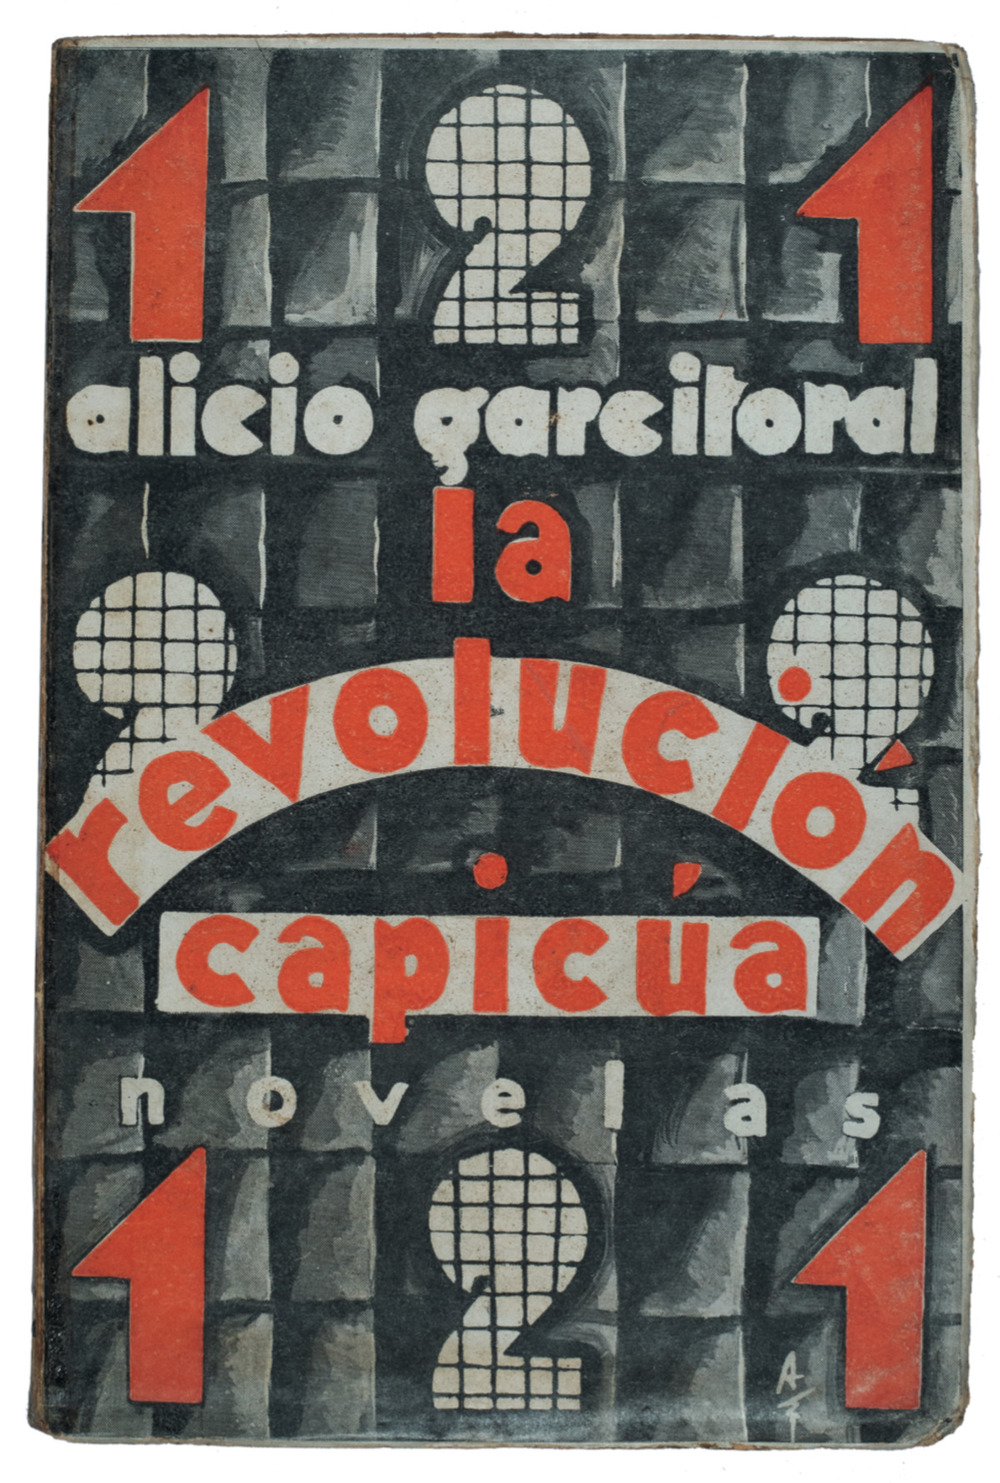 Cubierta de Alberto Sánchez para La revolución capicúa de Alicio Garcitoral. 